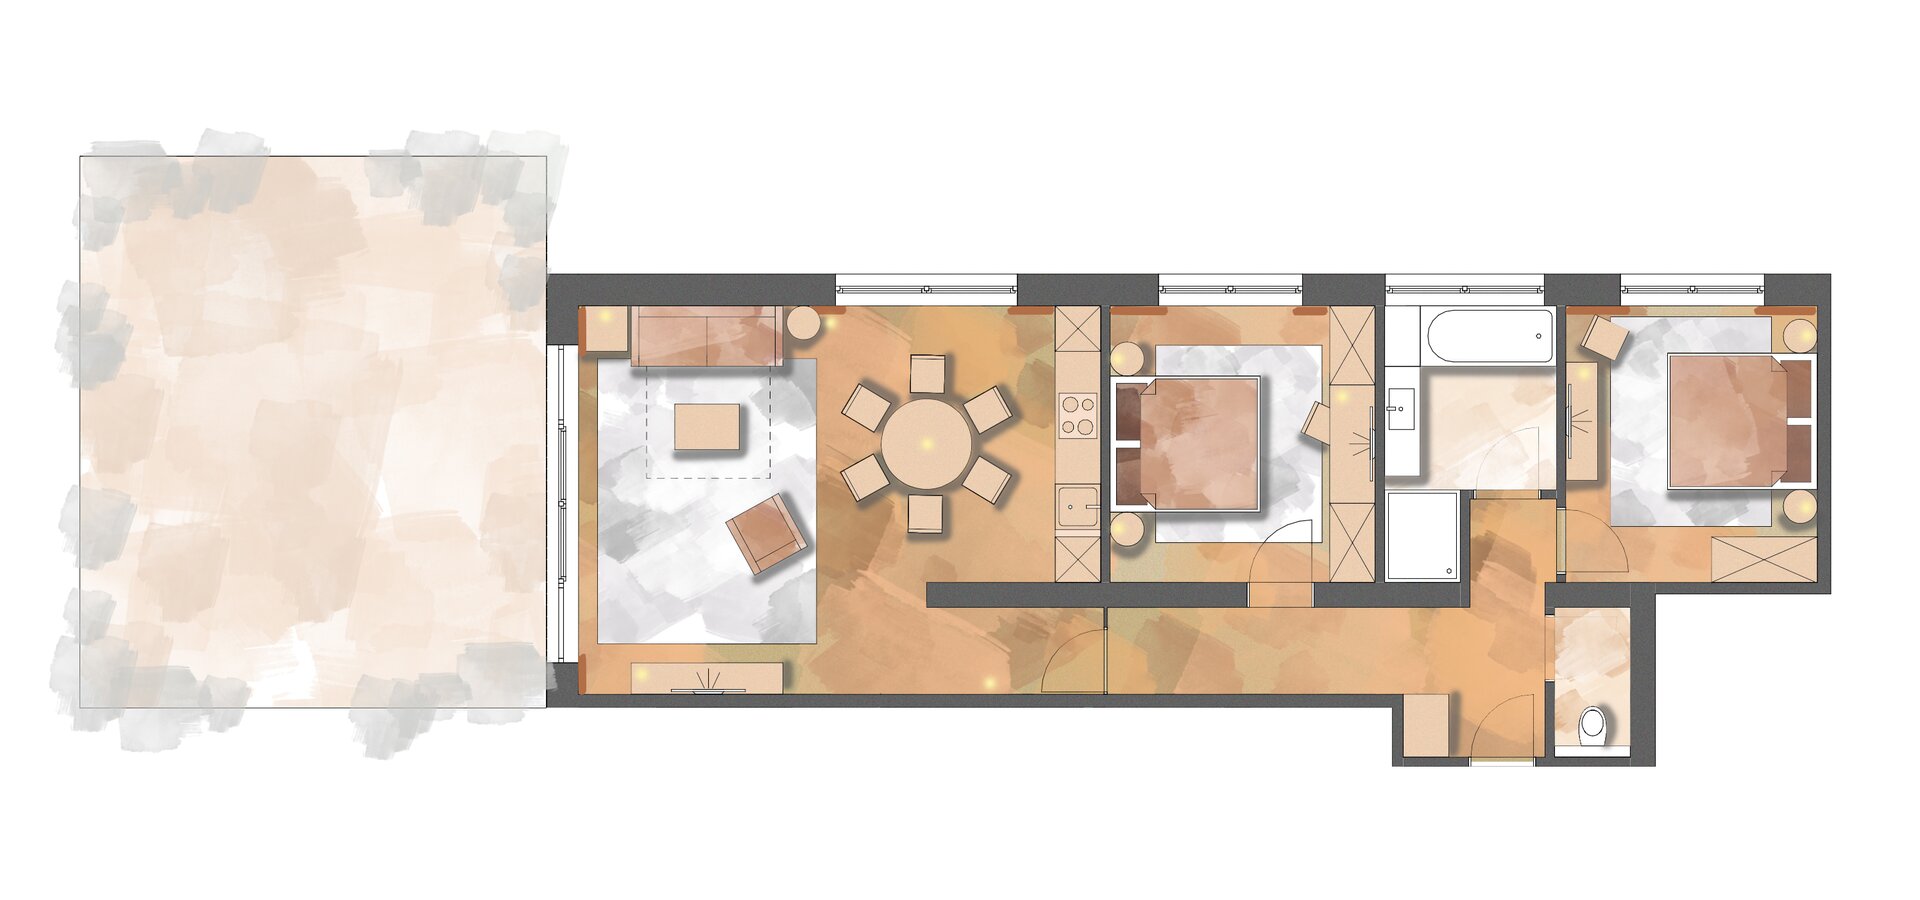 First floor apartment layout Schranz